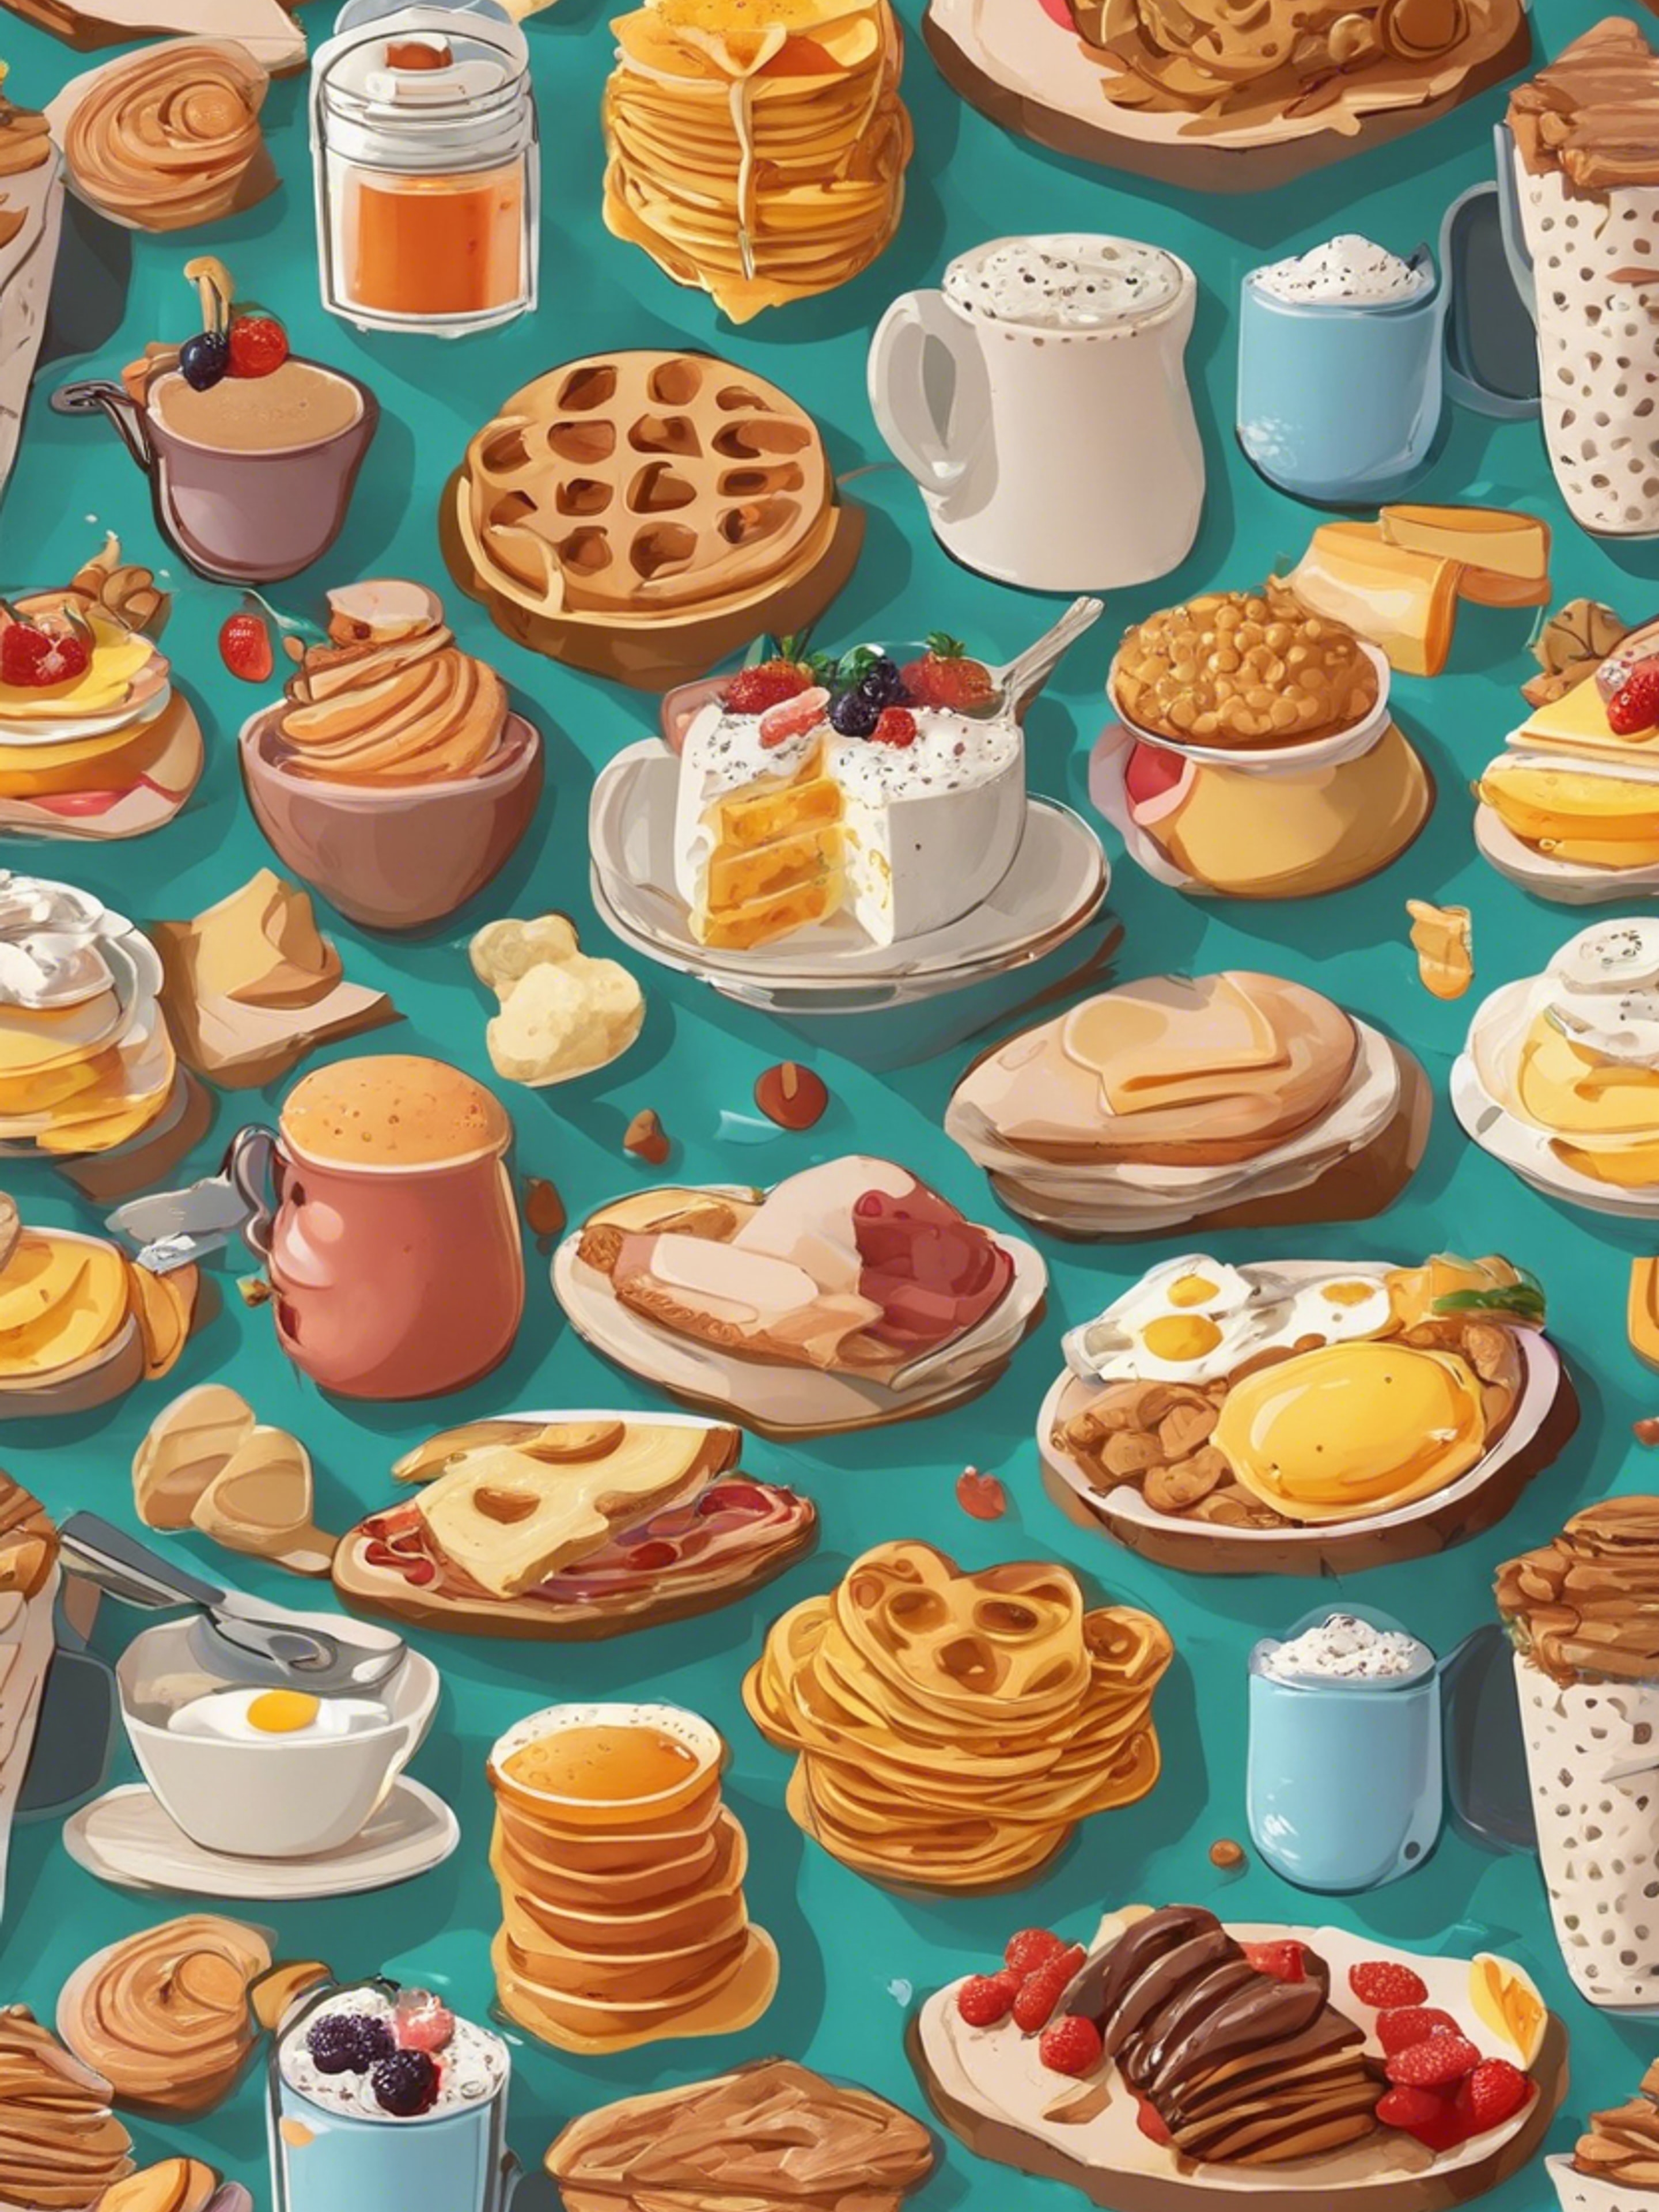 Cartoonish breakfast food items in an appealing, kid-friendly pattern. Fond d'écran[fa493d8b255444e69f8d]